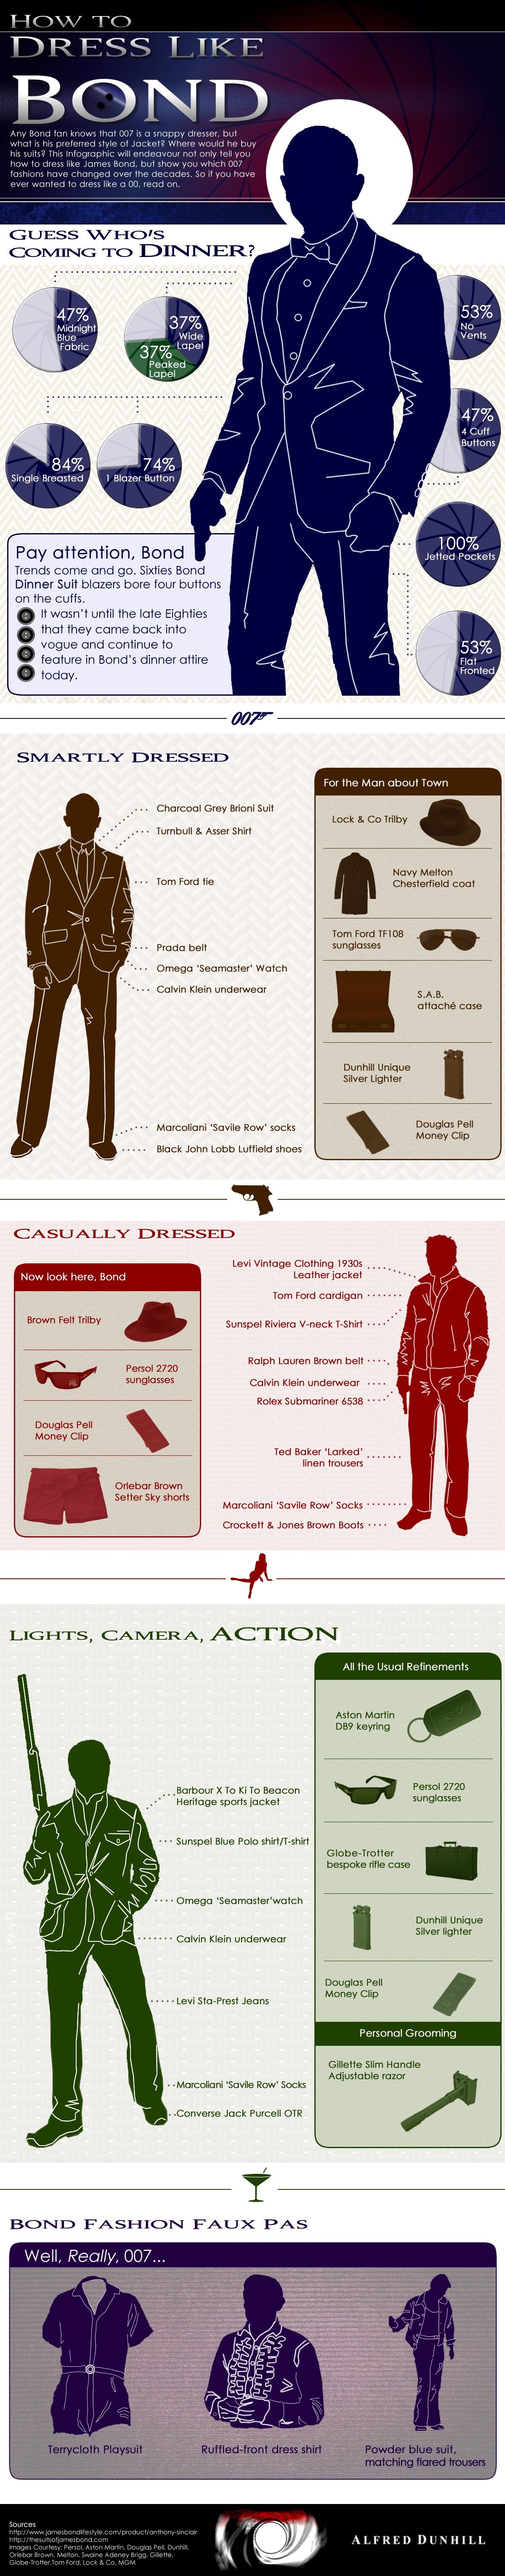 How James Bond Wears a Suit